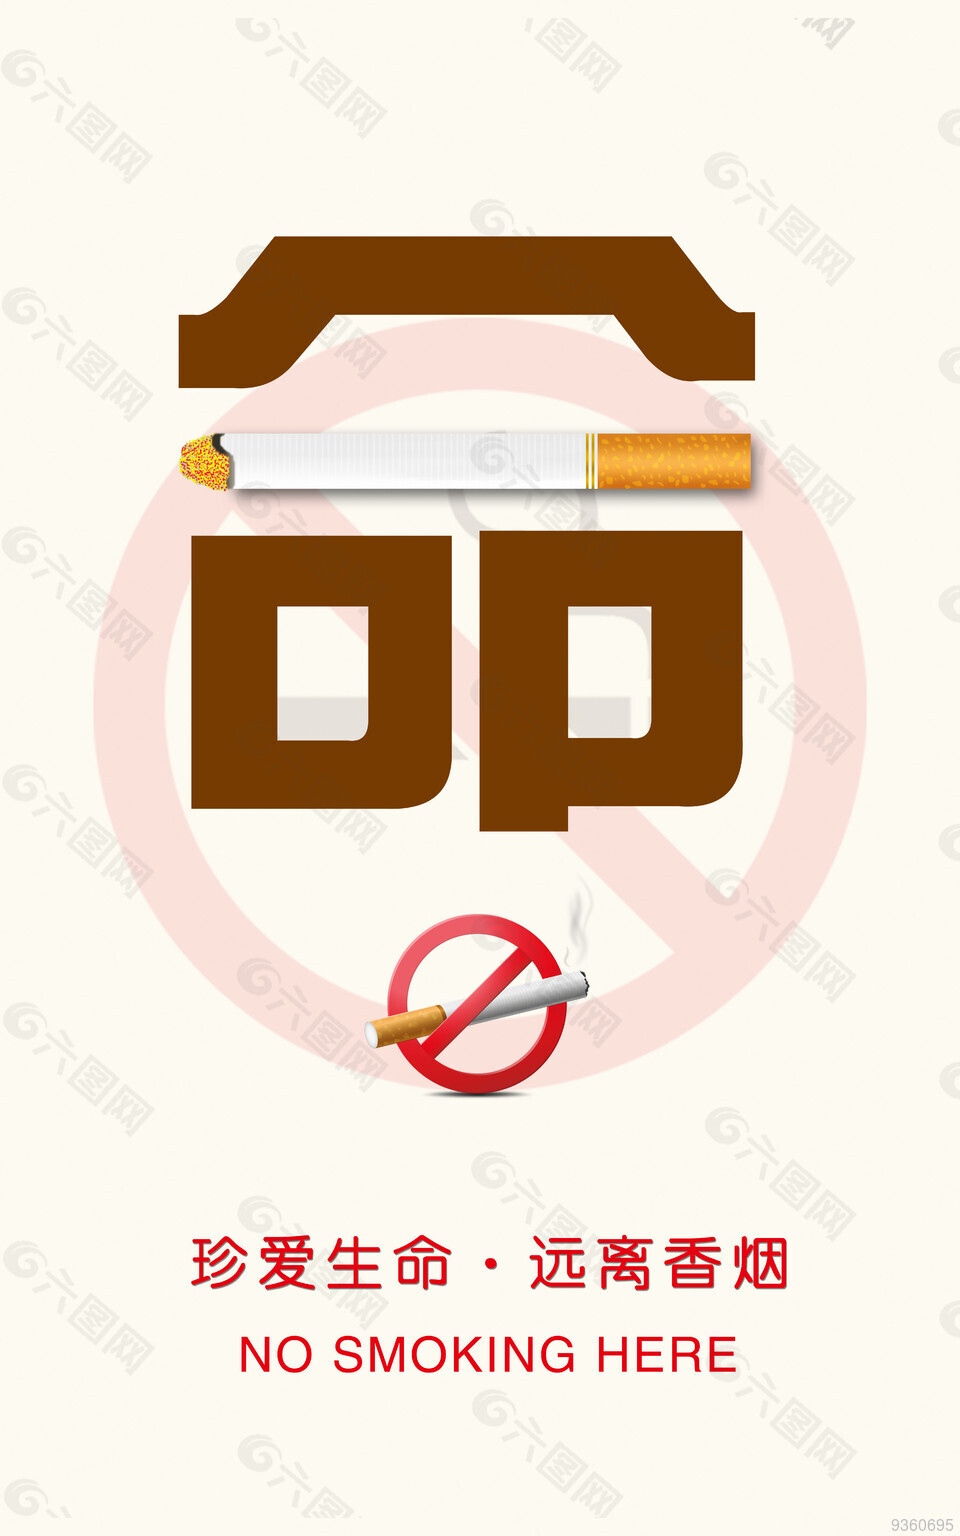 珍爱生命，远离香烟公益宣传海报